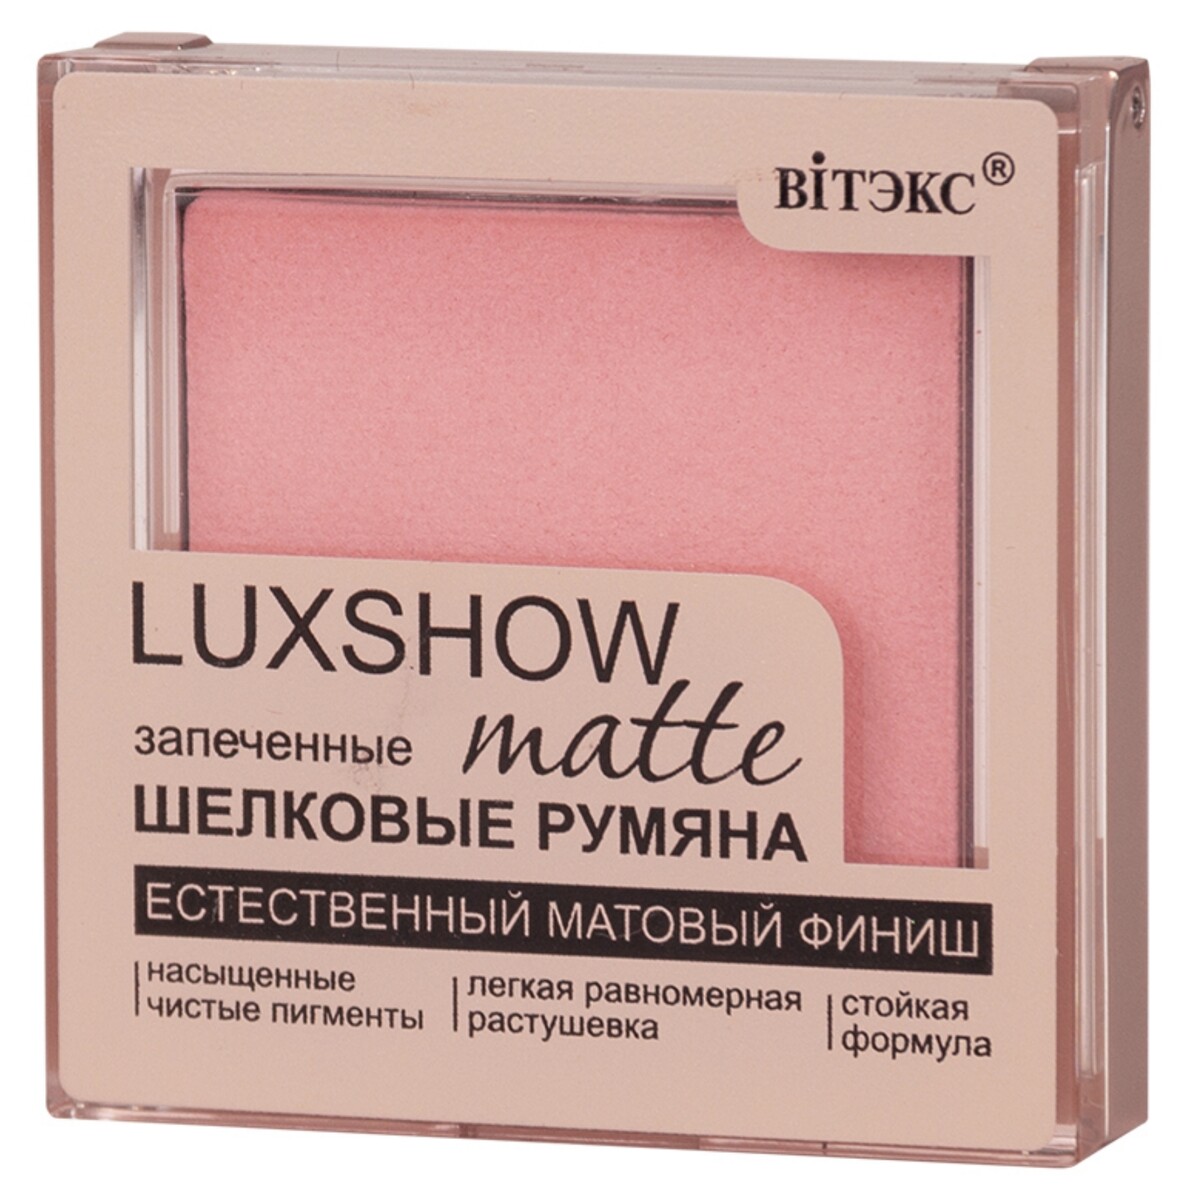 Vitex румяна матовые запеченные luxshow, тон 03, розовый 4,5 г Витекс 011413188 - фото 1